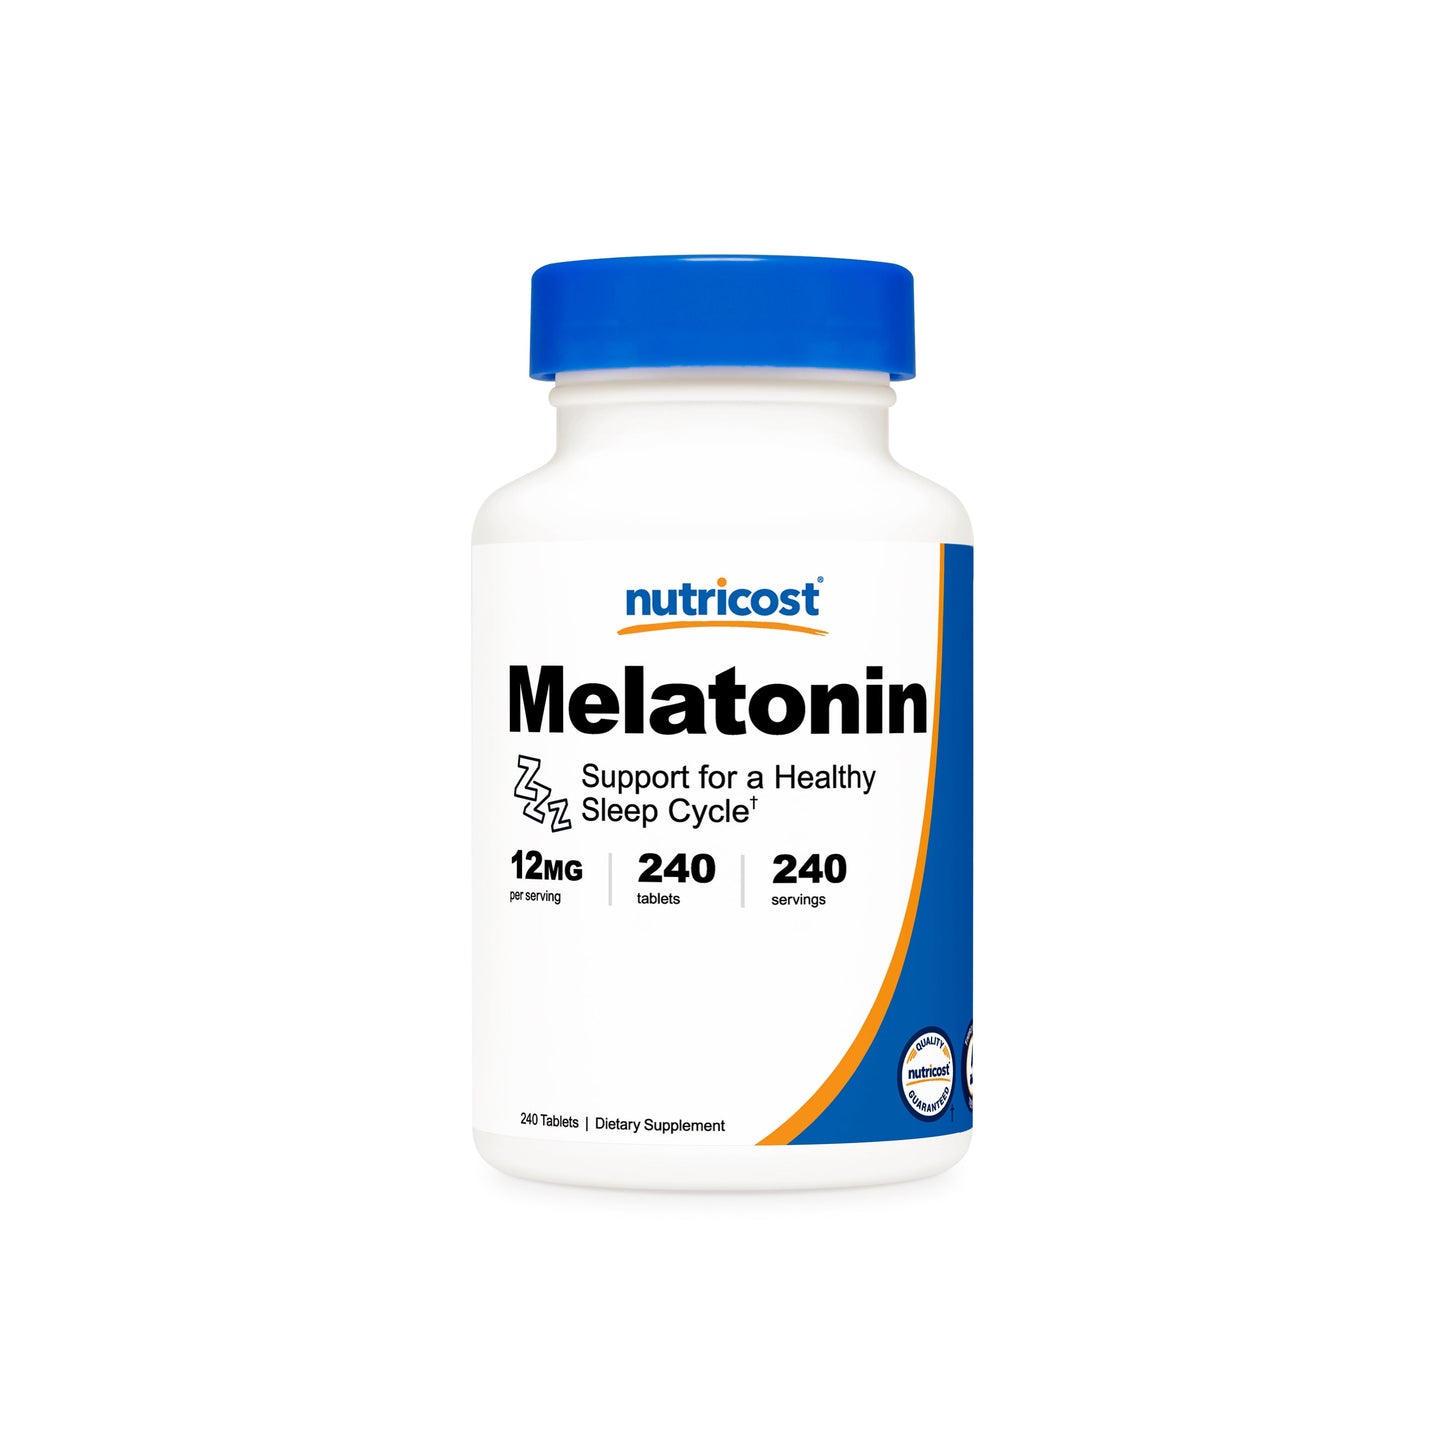 Nutricost Melatonin Tablets